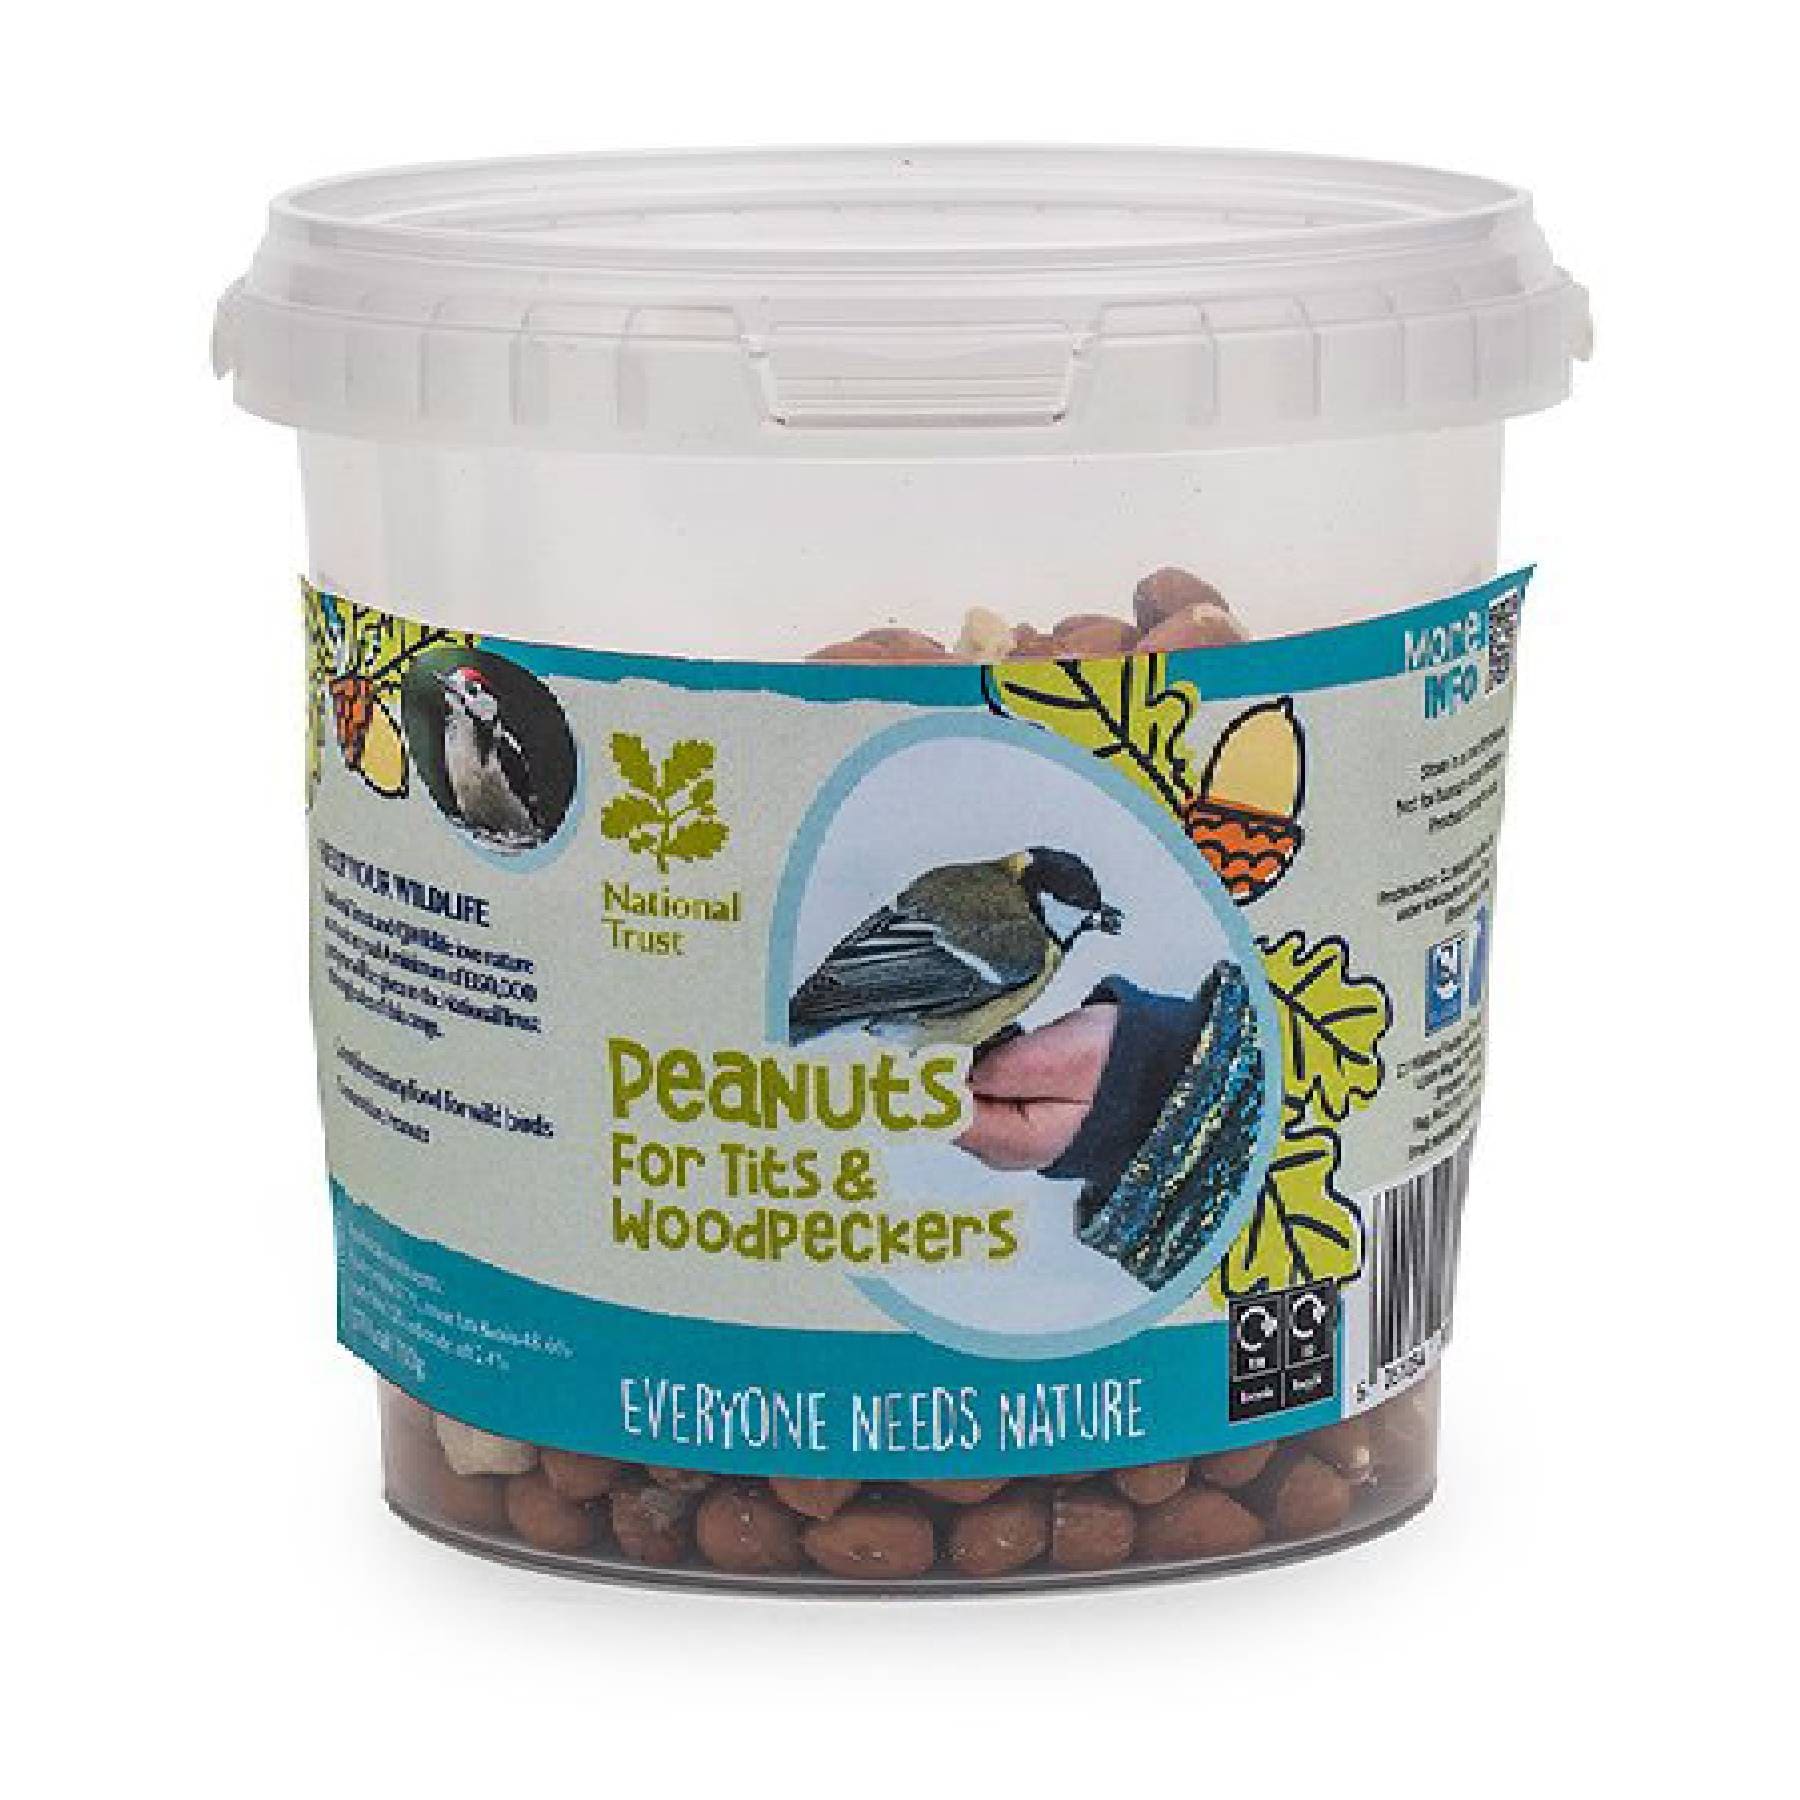 Woodpecker & tits peanuts tub